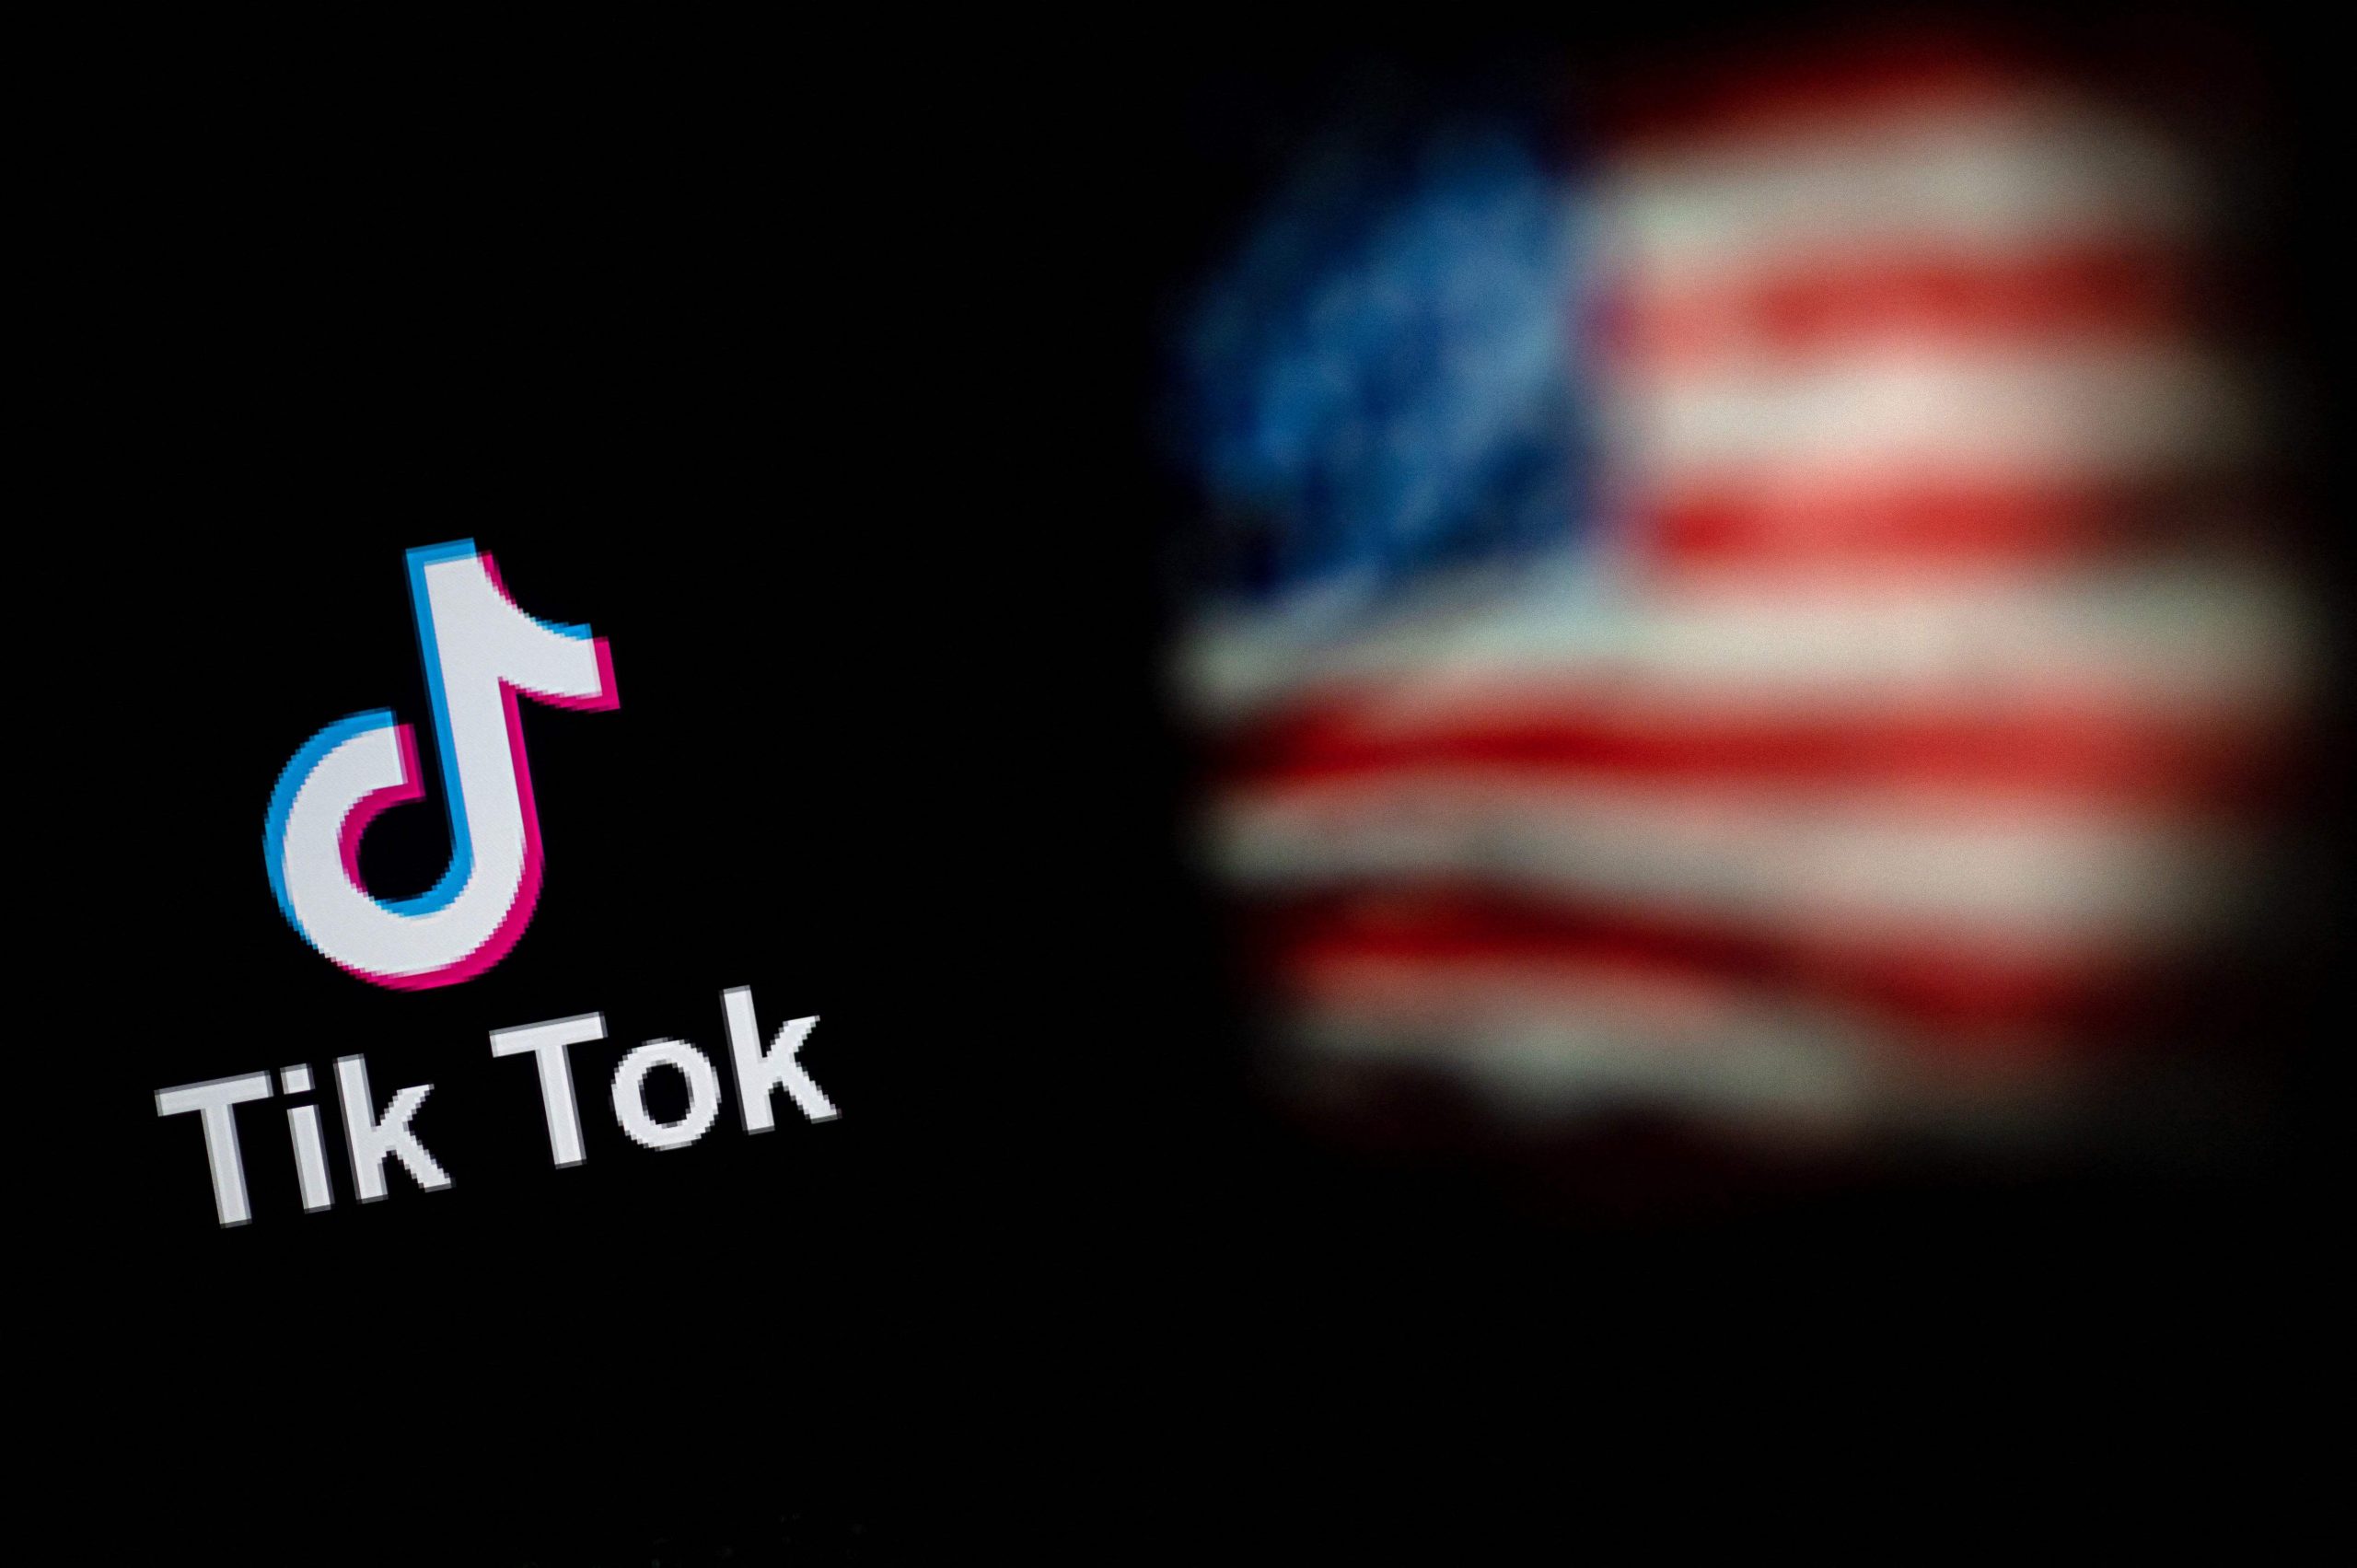 捷克当局警告 使用TikTok构成安全威胁